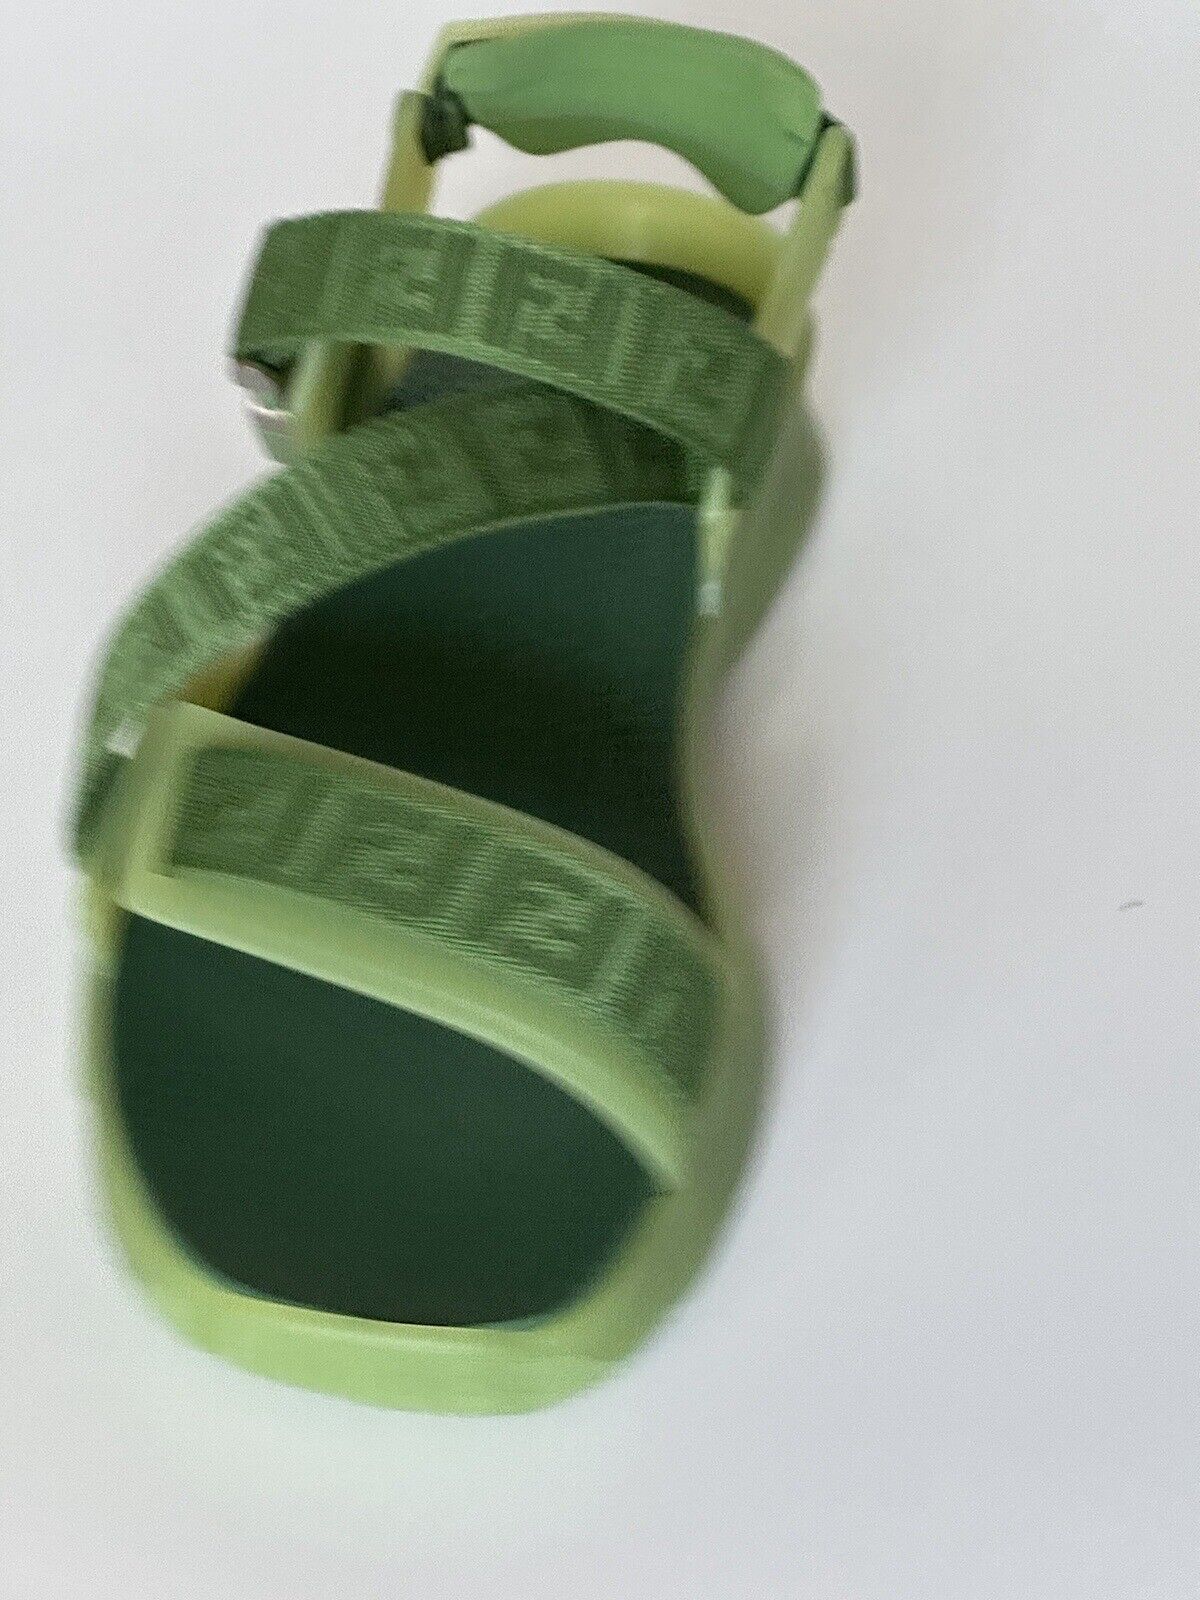 Мужские сандалии Fendi с ремешками Fendi, базилик, 895 долларов США, 10 США/9 Великобритания, Италия 7X1503 